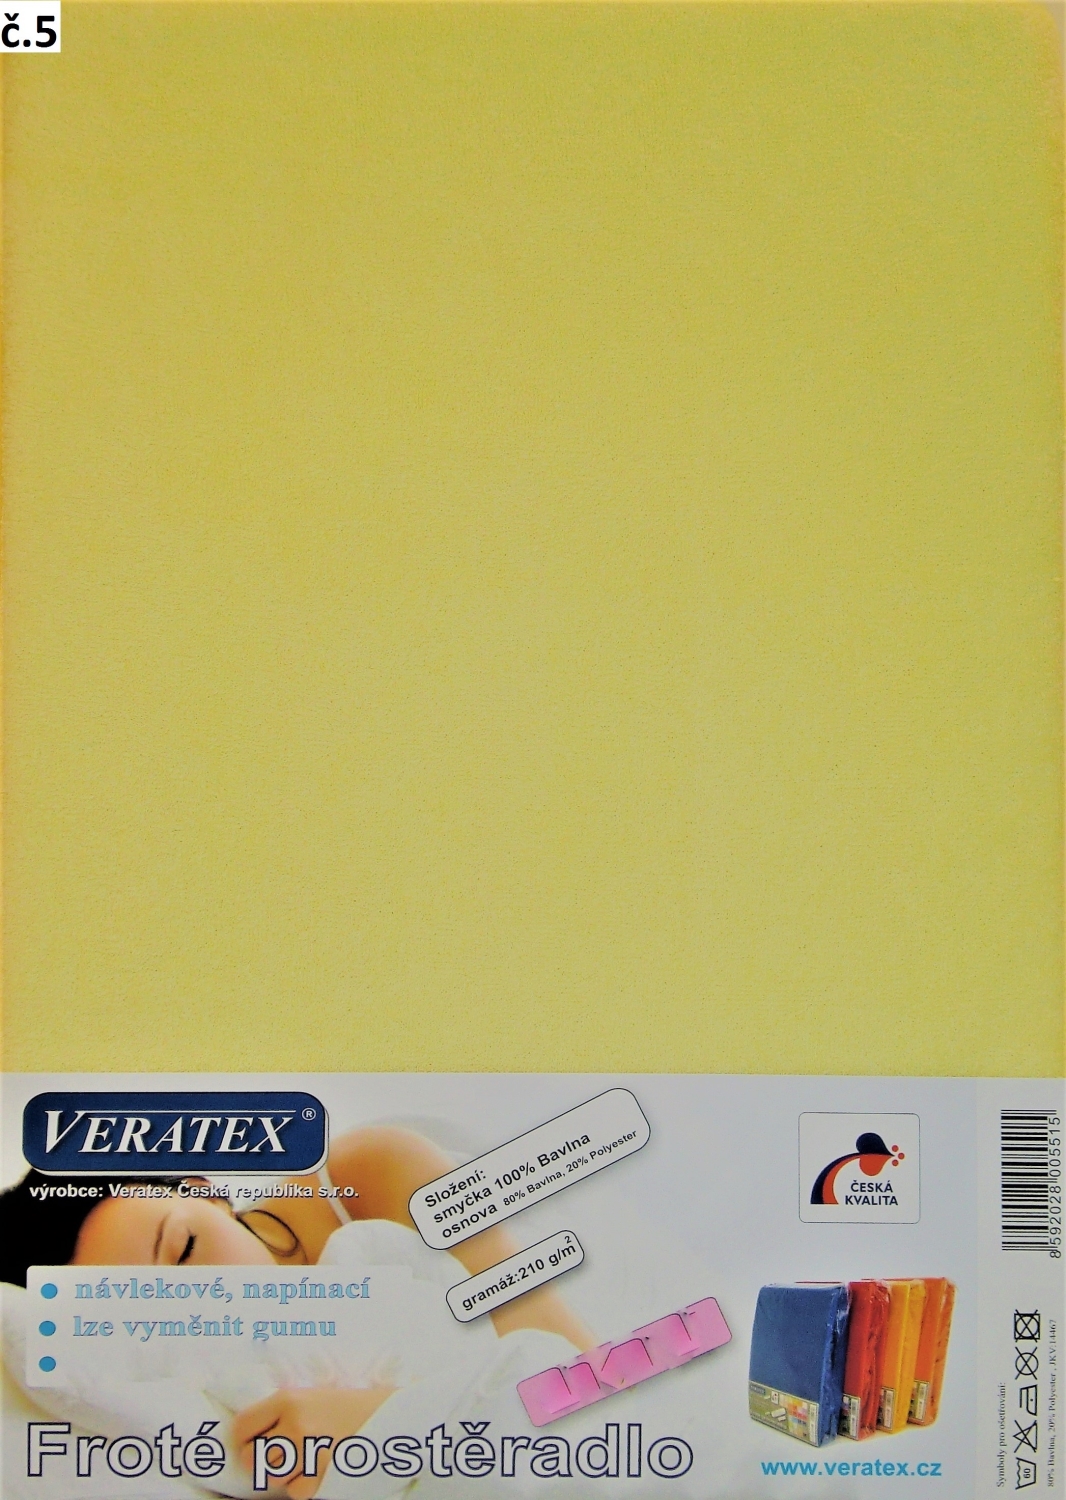 Veratex Froté prostěradlo 80x200 cm (č. 5-sv.žlutá)